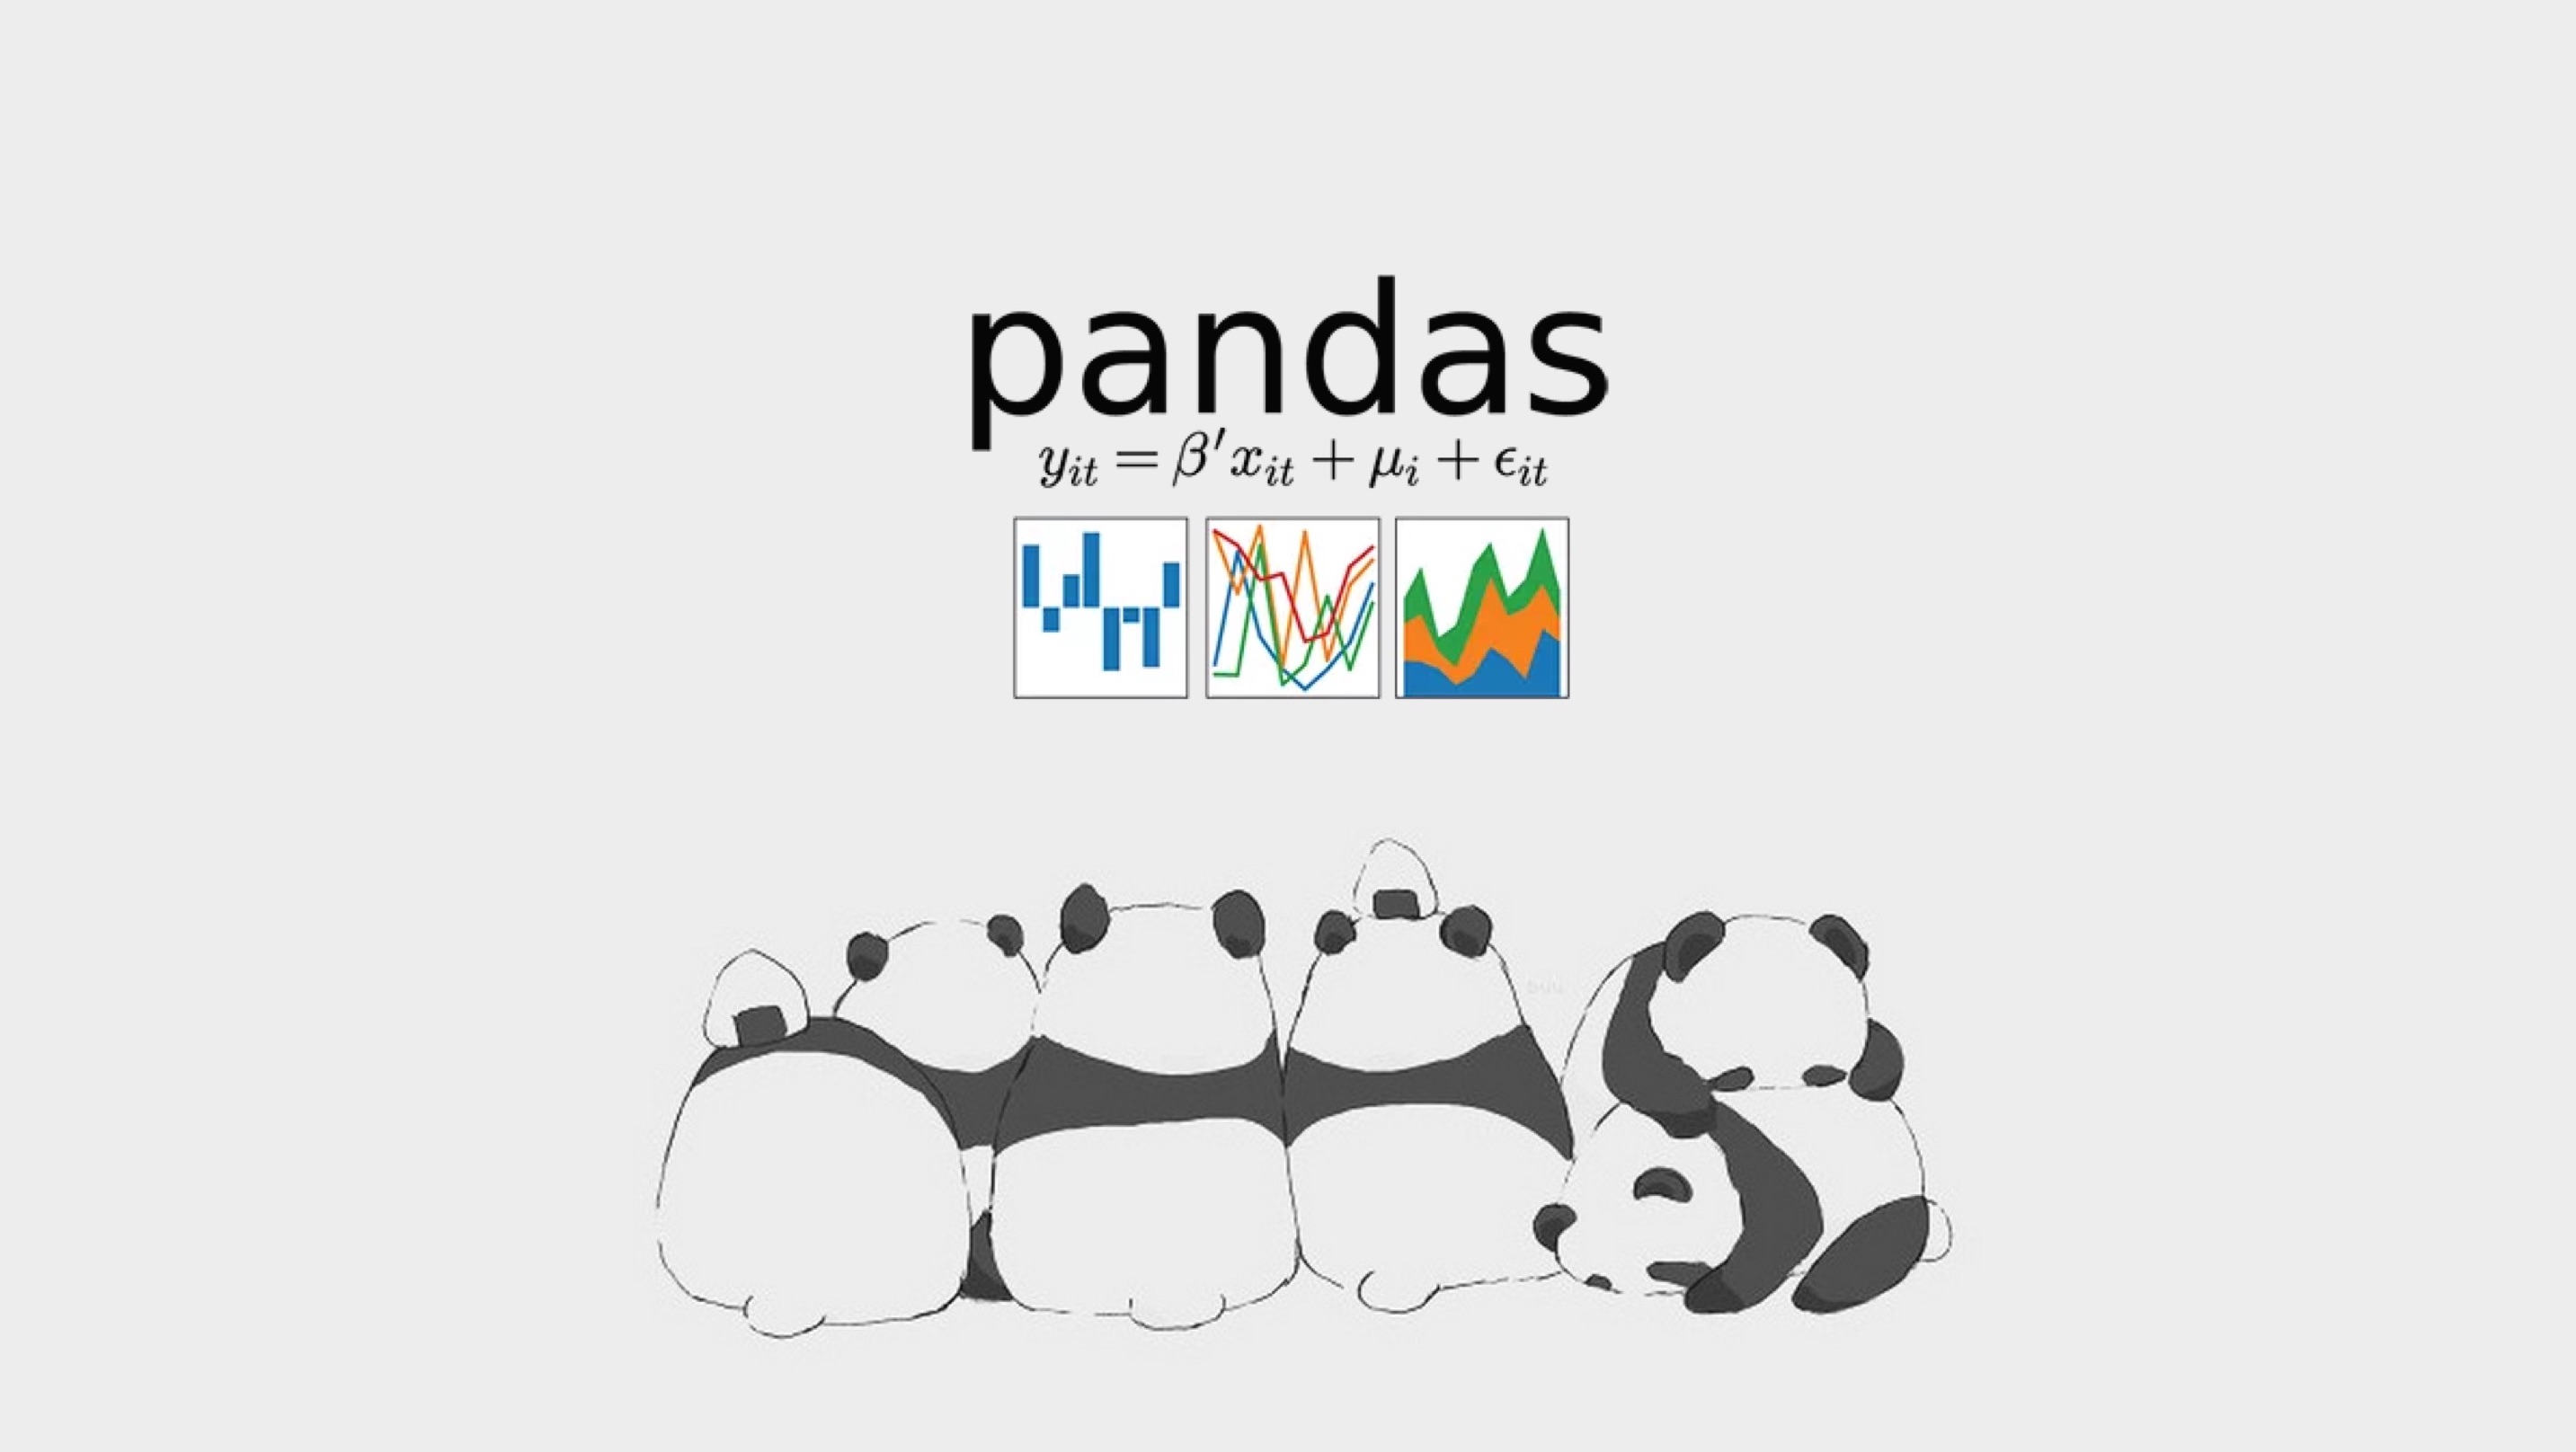 Библиотека pandas методы